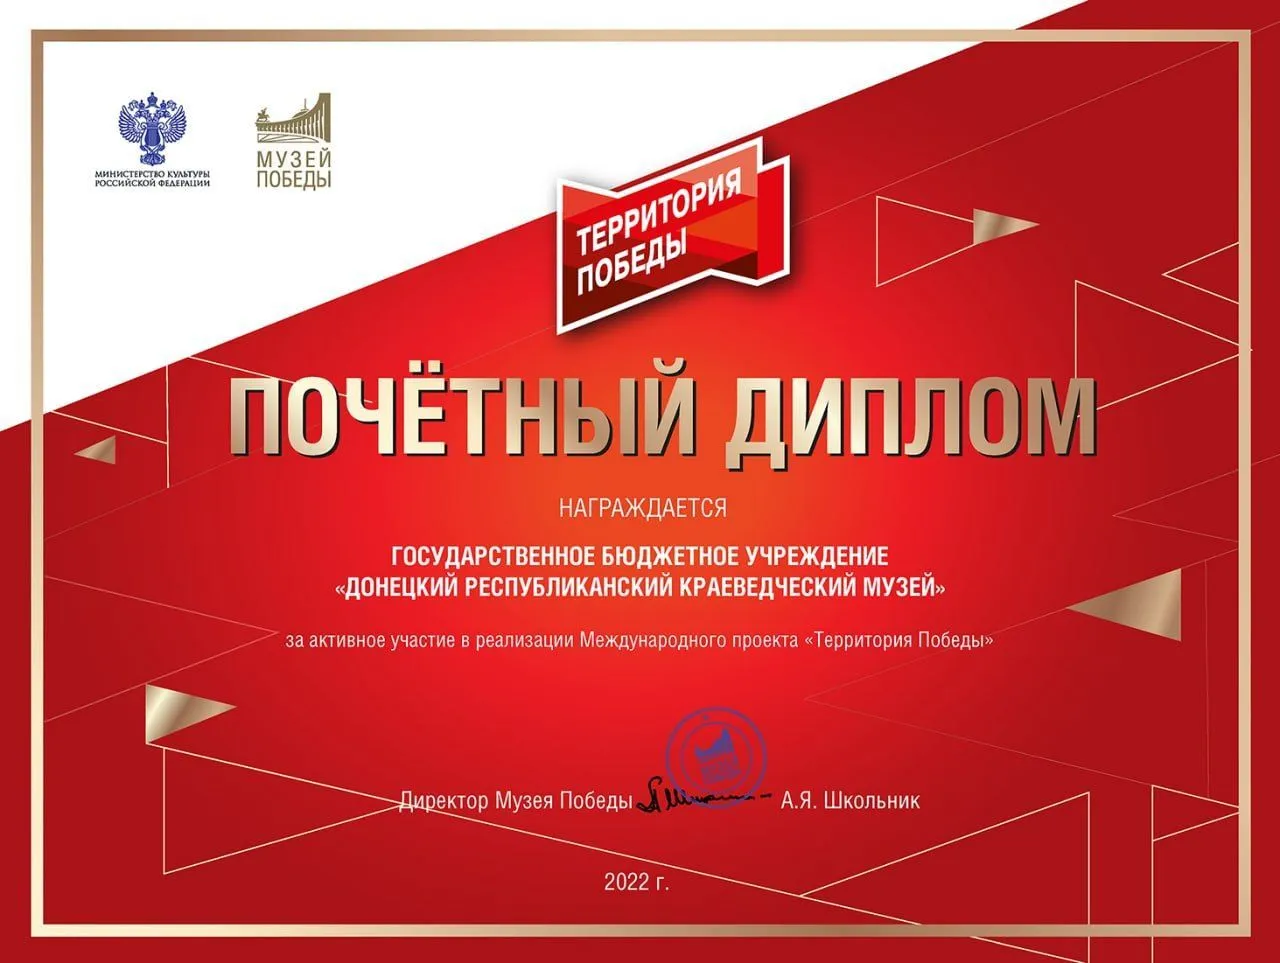 Донецкий республиканский краеведческий музей награждён почетным дипломом